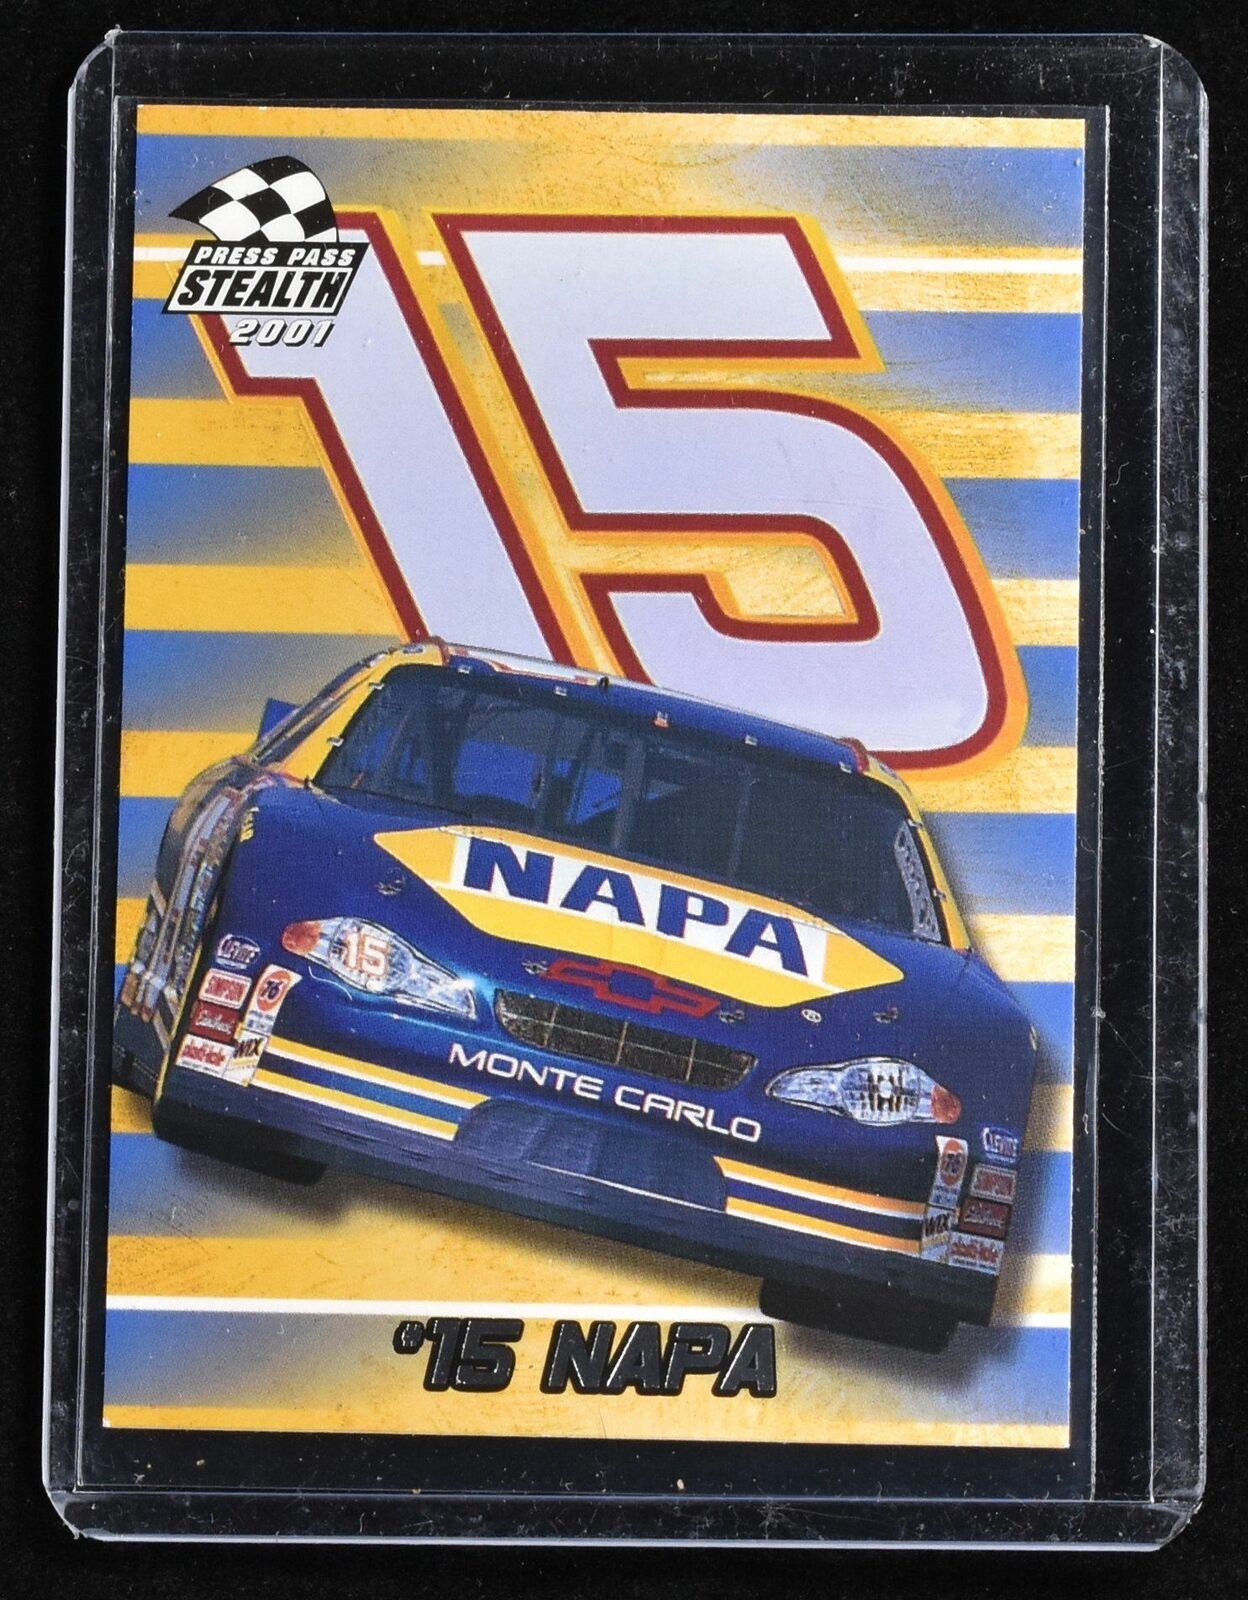 15 Napa Nascar Racing Press Pass Stealth 2001 No. 17